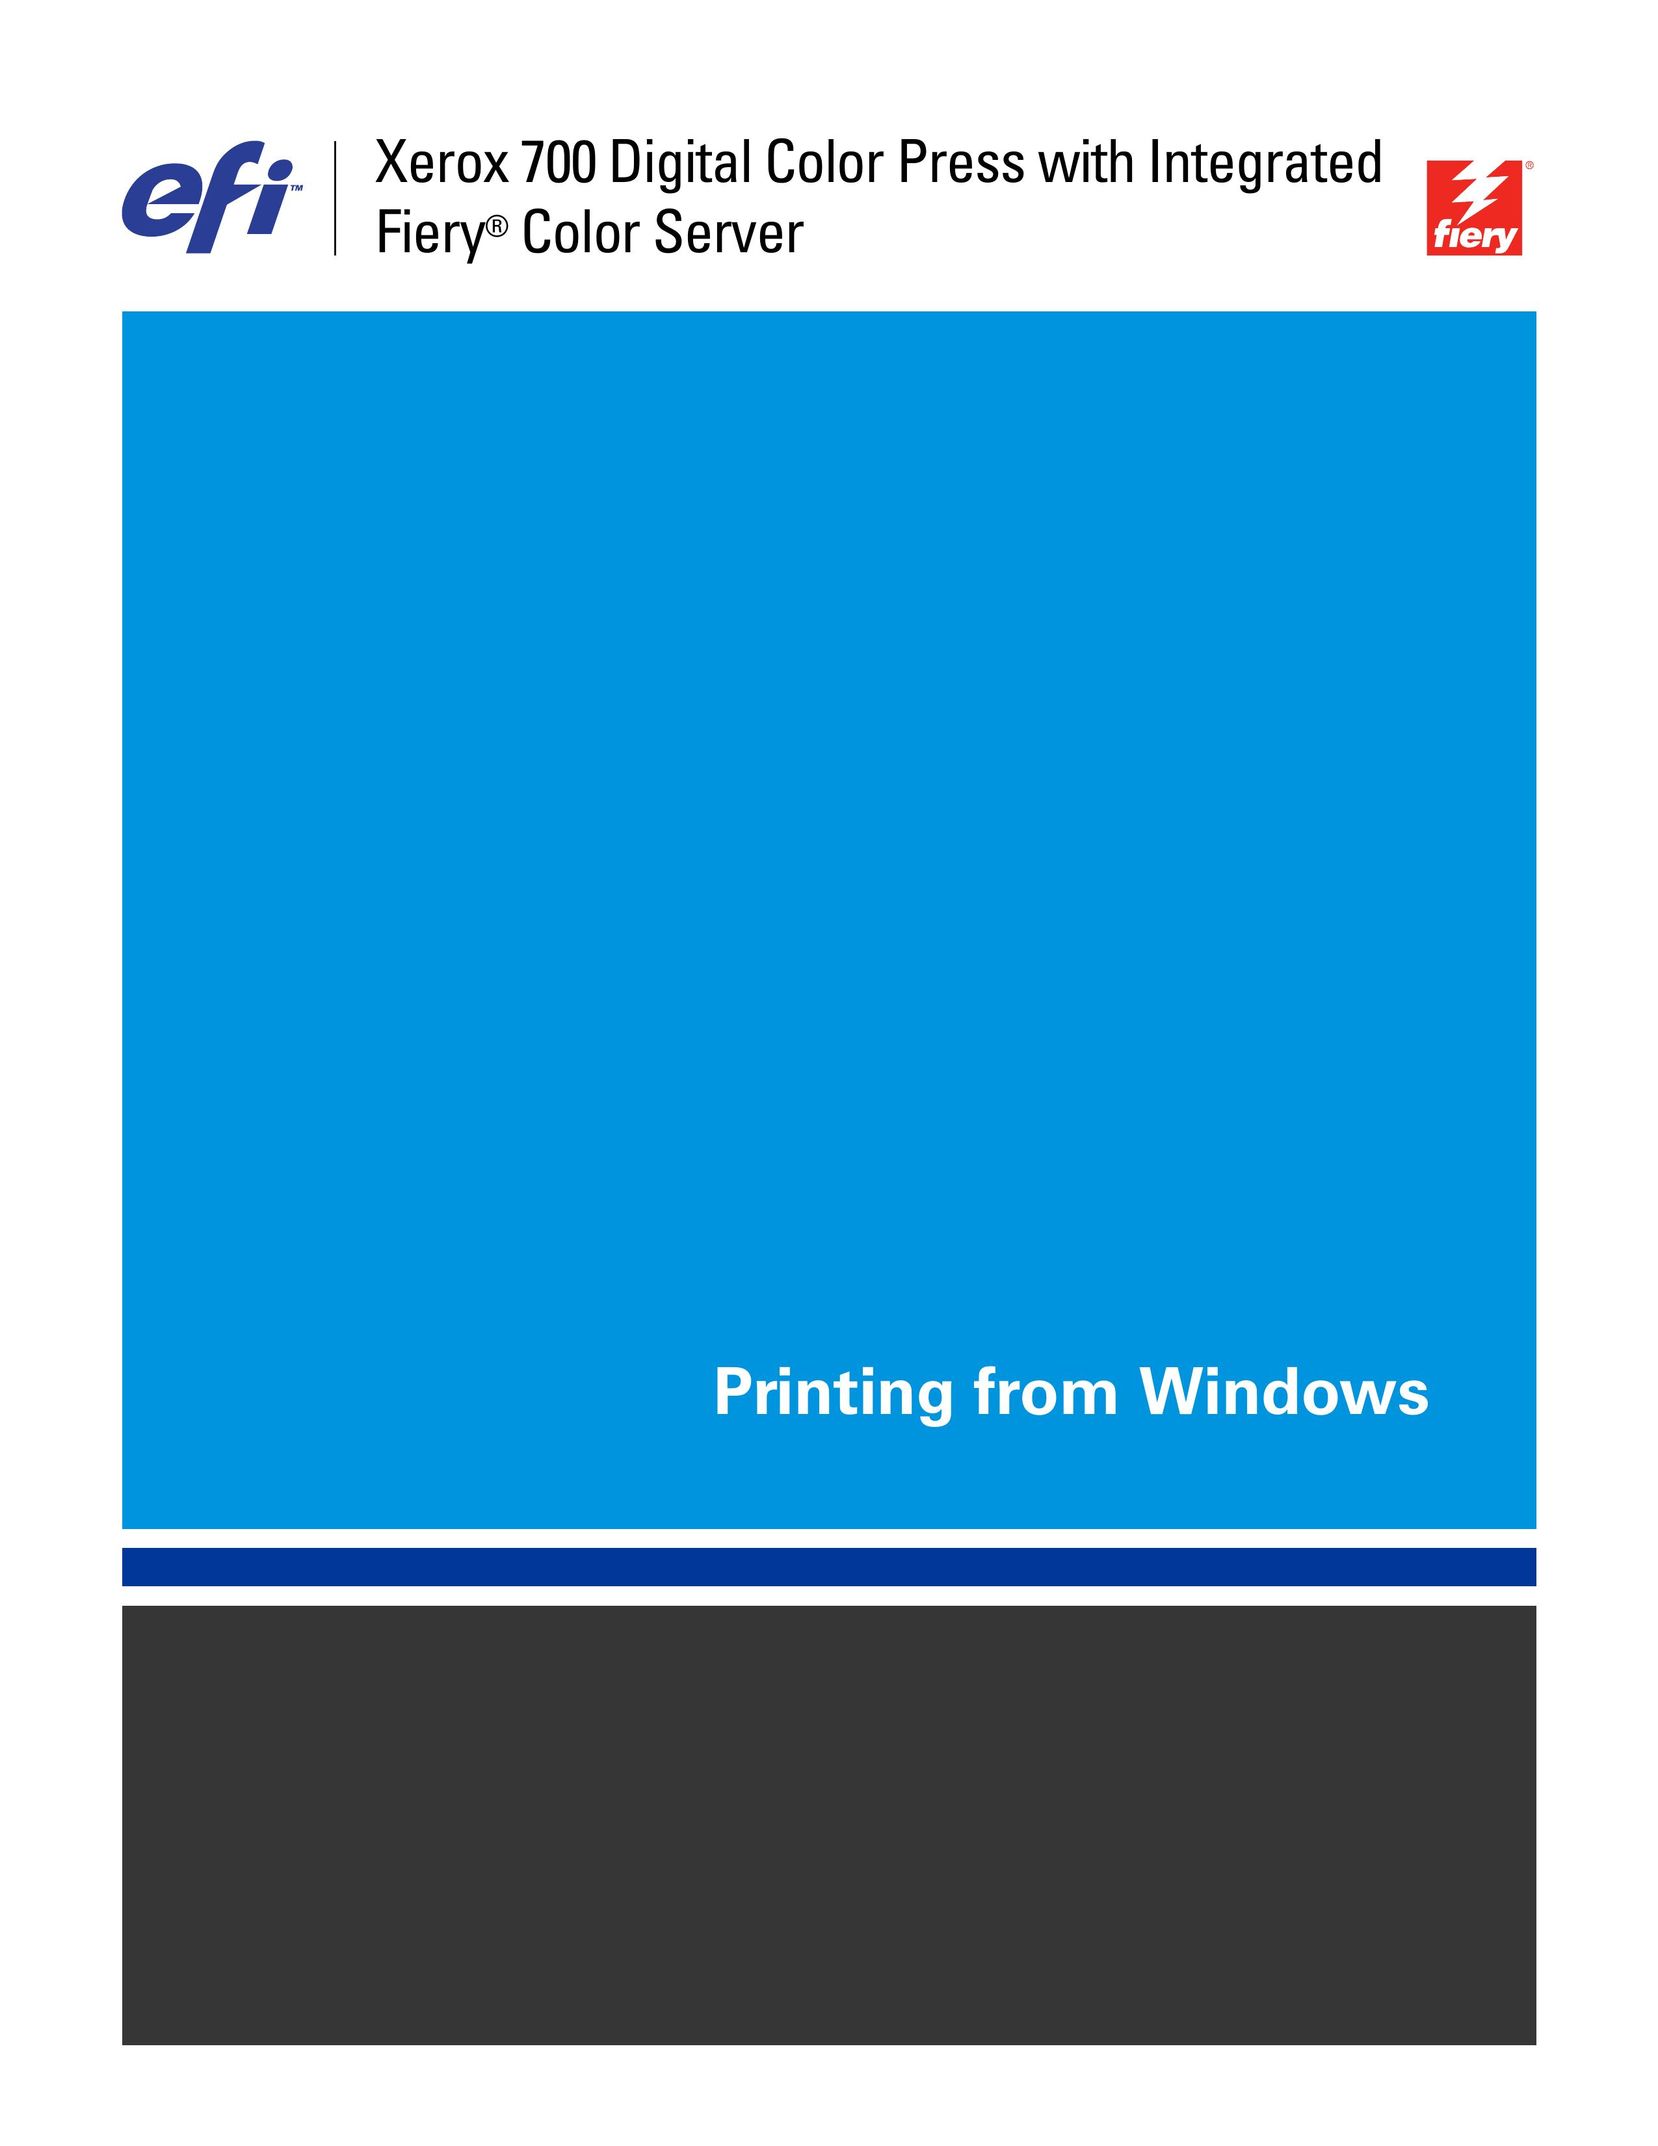 Xerox 019-6400 Printer User Manual